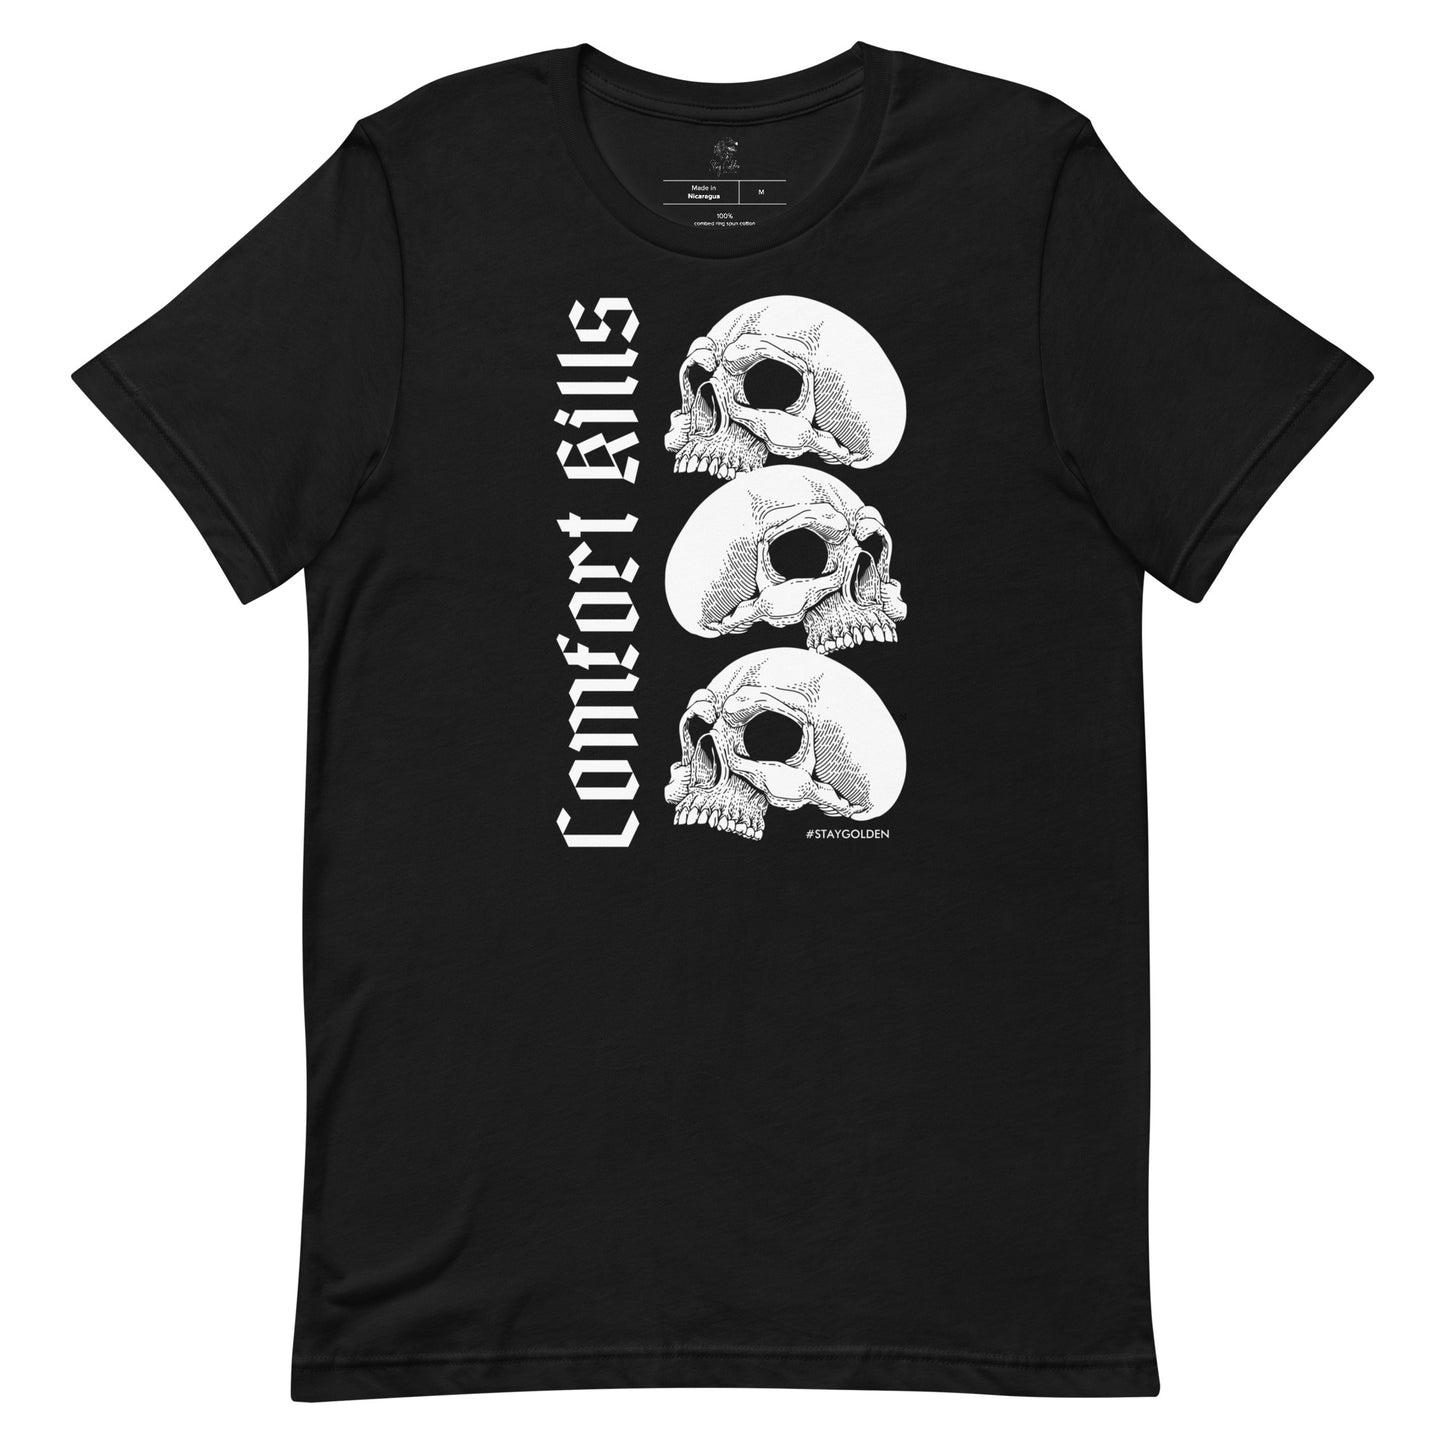 Comfort kills - Unisex t-shirt